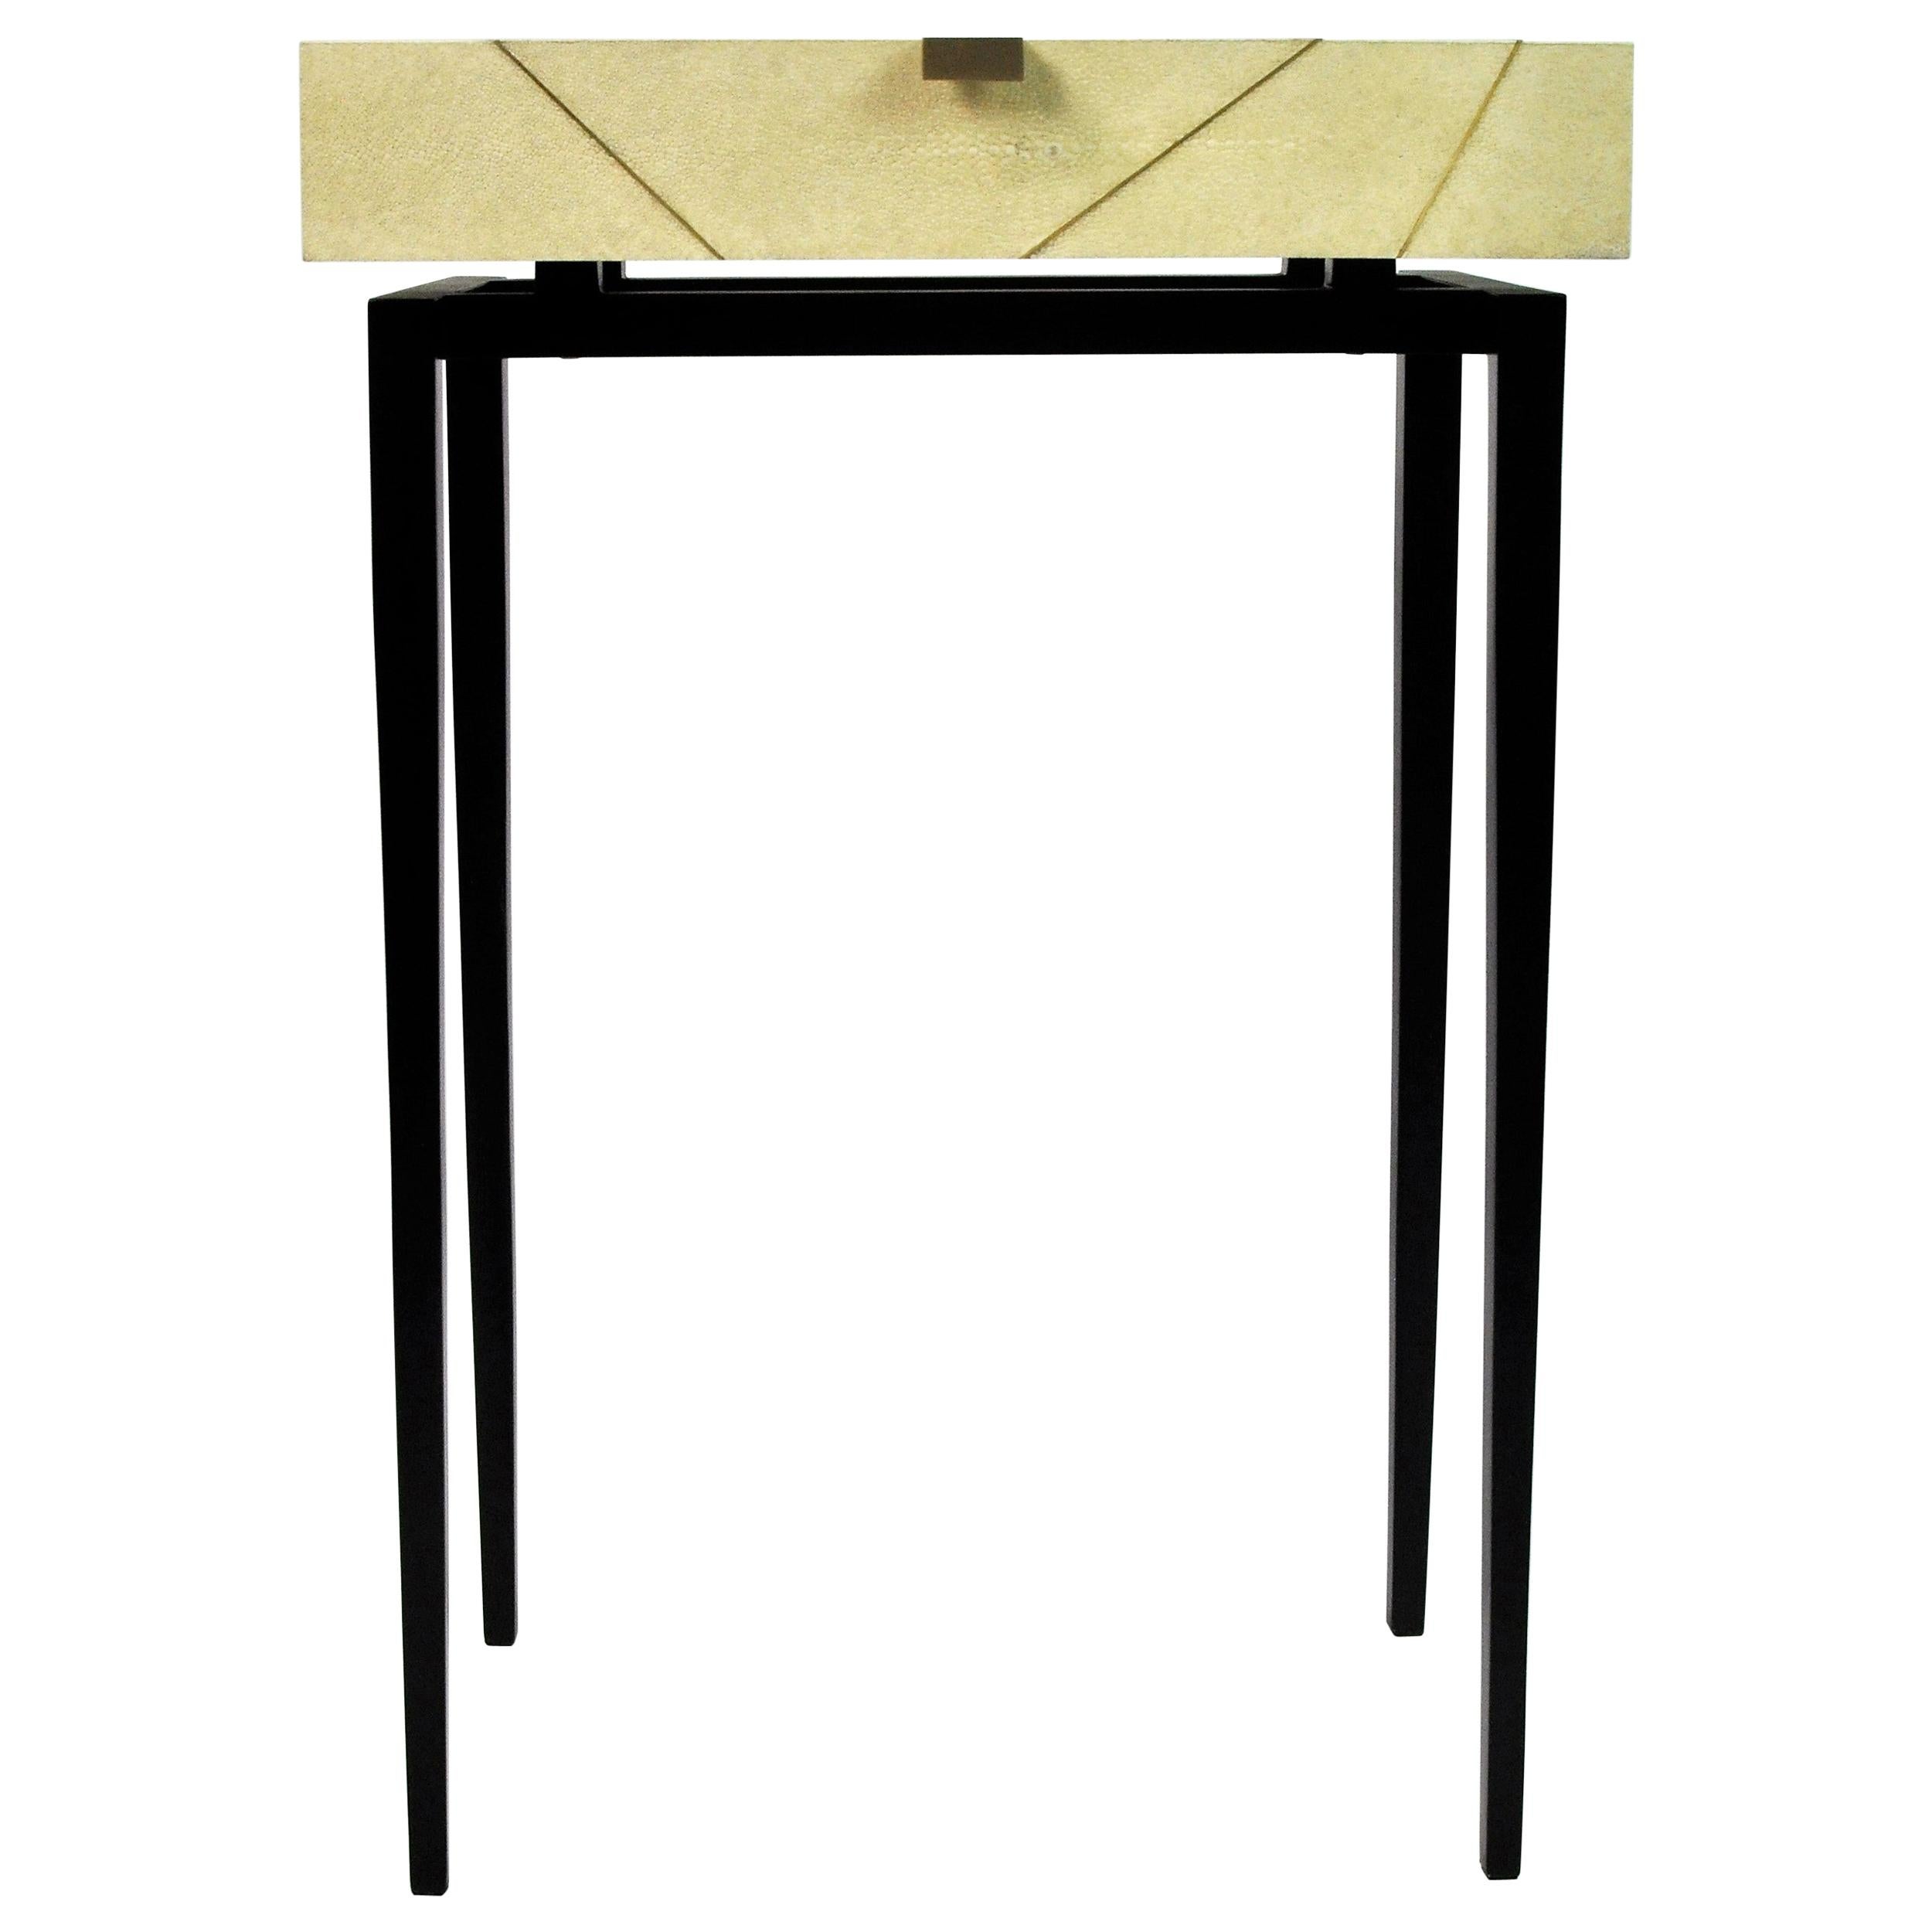 La table console RADIUS est réalisée en galuchat avec des garnitures en laiton.
Il comporte un tiroir fin et les pieds sont en métal peint en noir satiné.
Cette pièce s'installera très bien dans votre entrée ou votre salon. Ses dimensions réduites